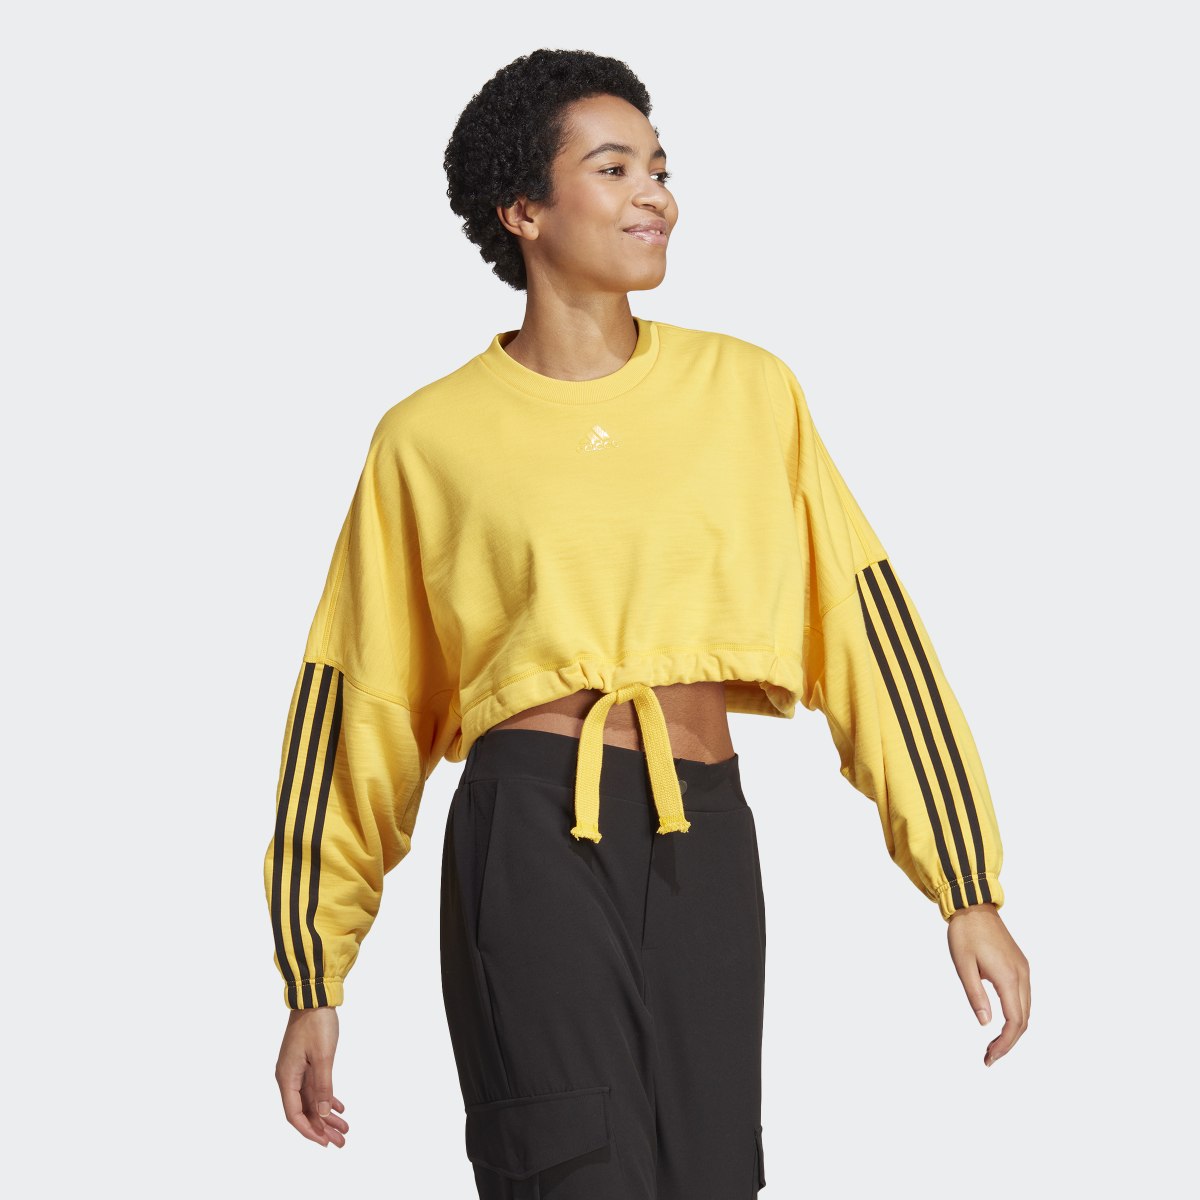 Adidas Dance Crop Versatile Sweatshirt. 4